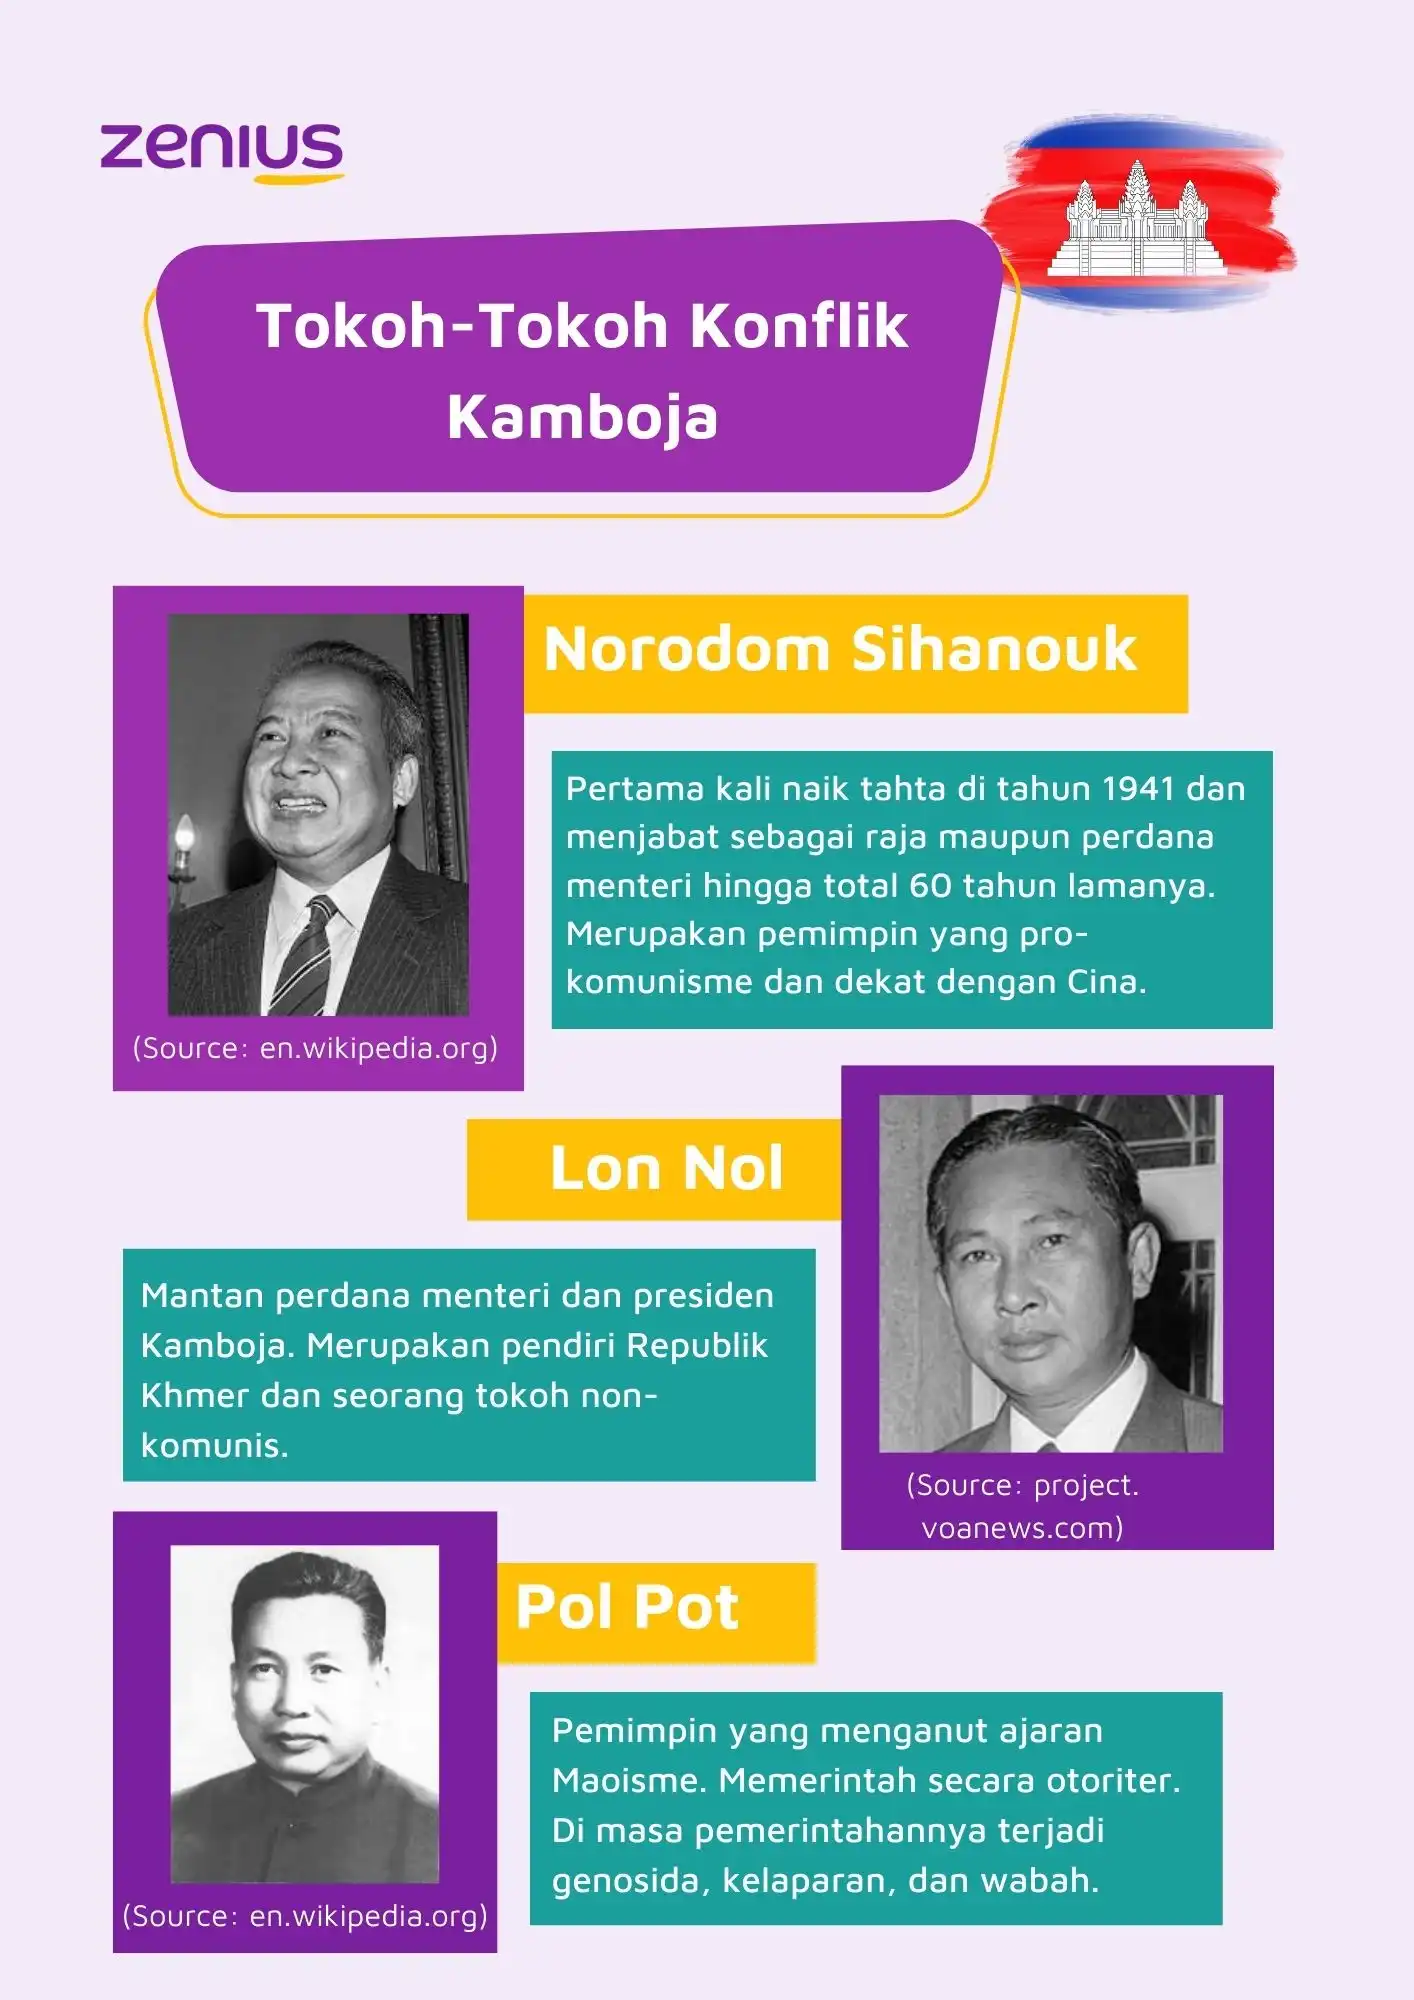 Tokoh-tokoh konflik Kamboja diantaranya adalah Sihanouk, Lon Nol, dan Pol Pot. Ketiganya saling berebut kekuasaan.